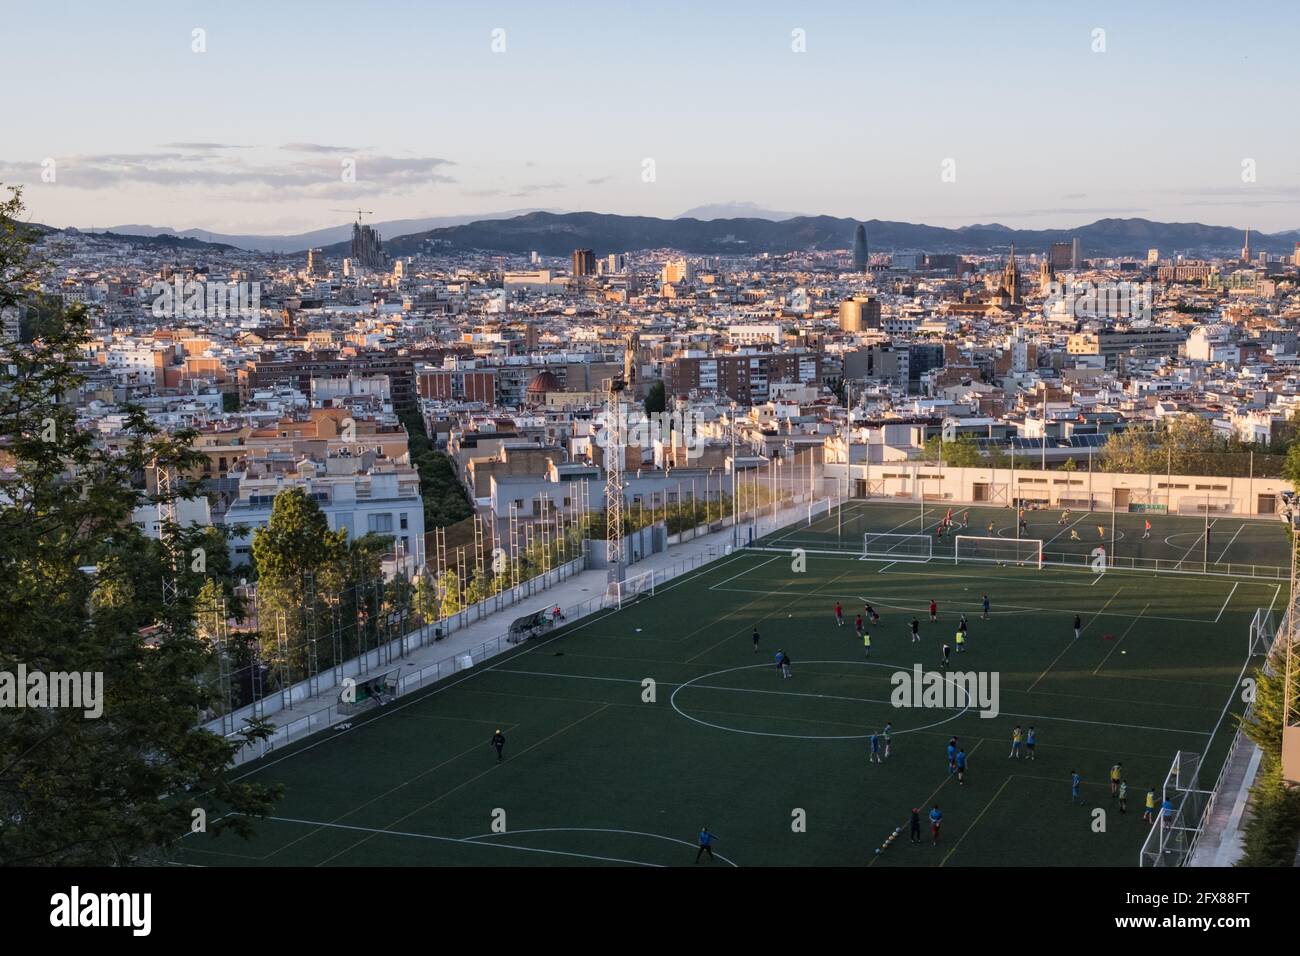 Una foto tomada el 11 de mayo de 2021, desde el cerro Montjuic de Barcelona (España), muestra un campo de fútbol municipal situado en el distrito de Poble Sec. Foto de stock